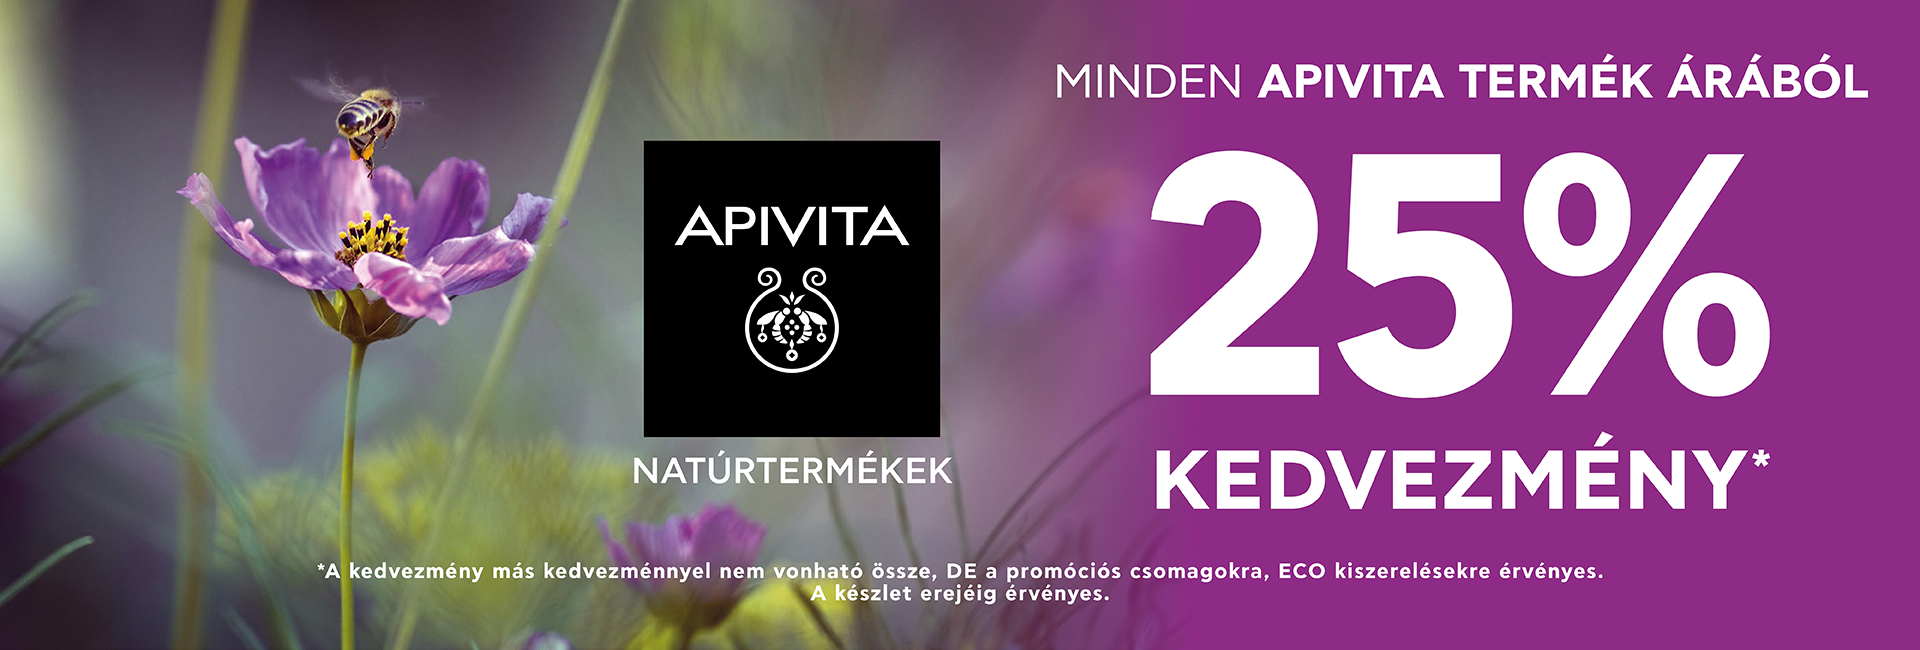 2020. április 13-20. között minden Apivita terméket 25% kedvezménnyel kínálunk! 